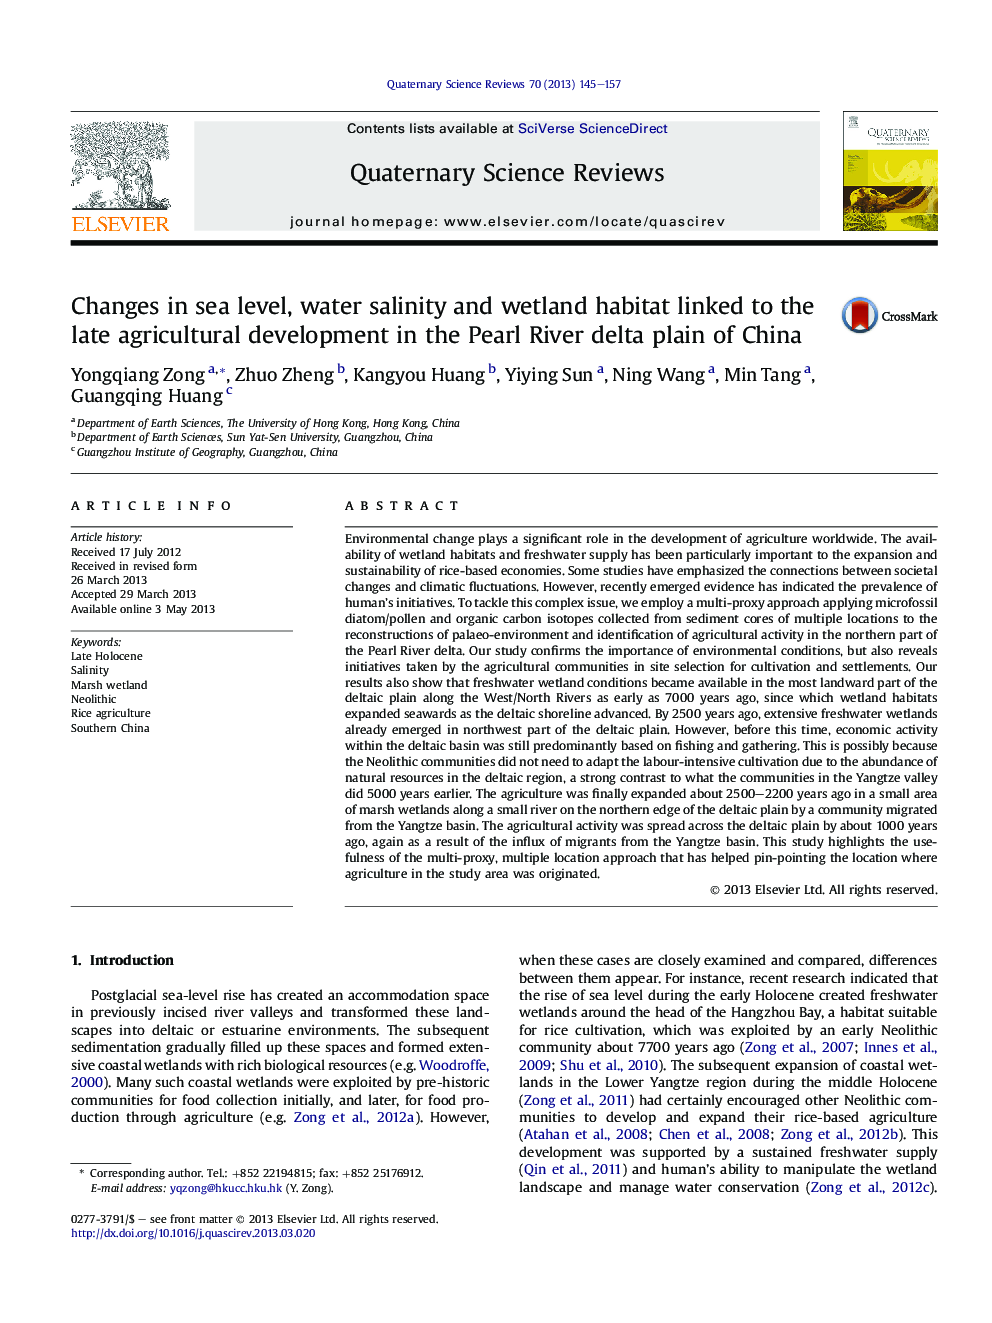 تغییرات در سطح دریا، شوری آب و زیستگاه های تالاب مرتبط با توسعه اقتصادی دیرین در دشت دلف مریلند چین 